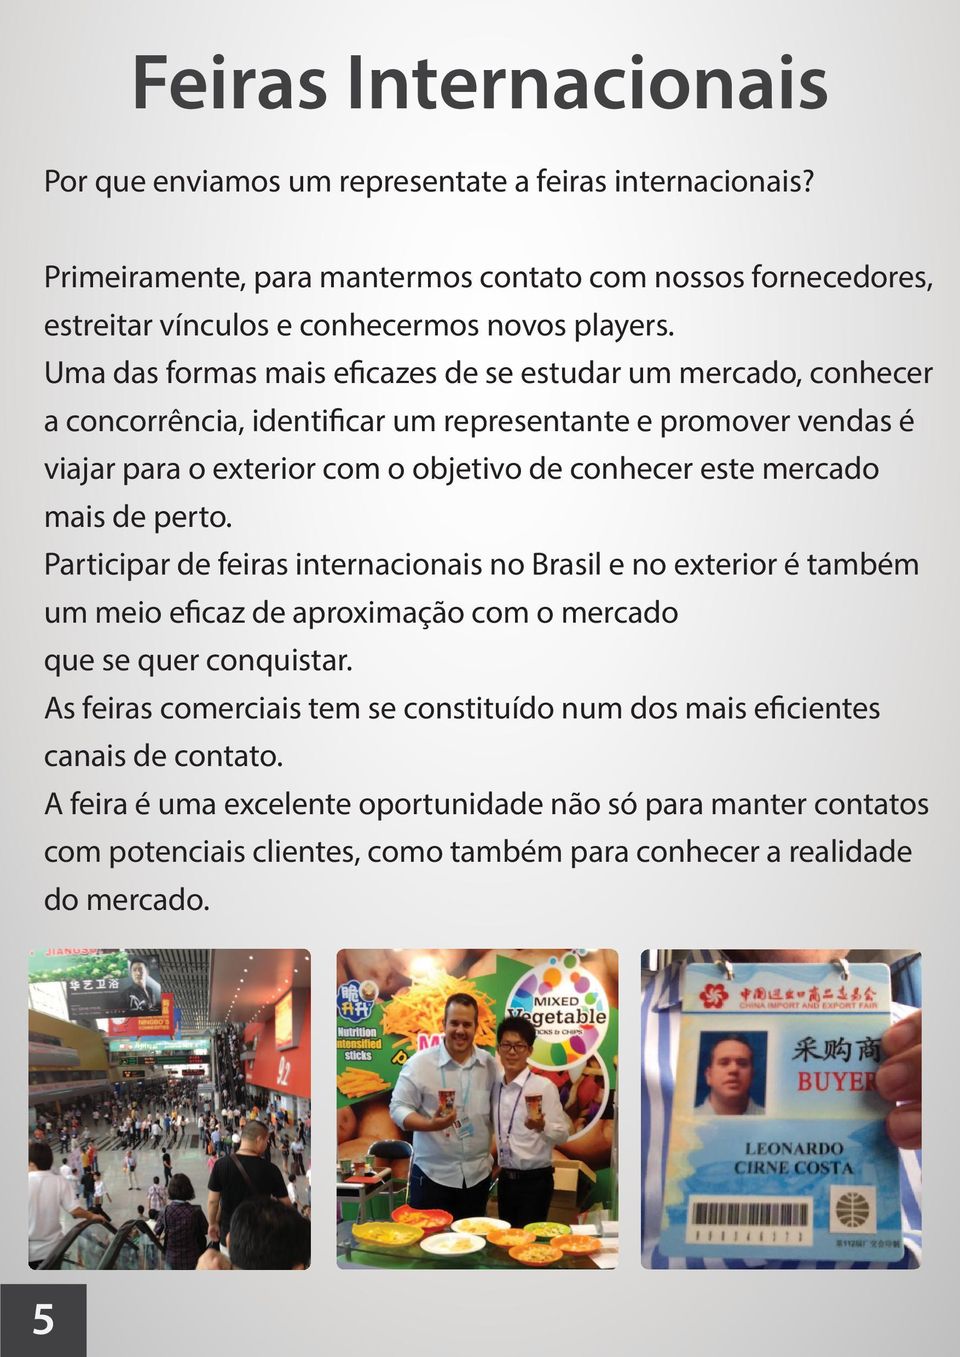 mercado mais de perto. Participar de feiras internacionais no Brasil e no exterior é também um meio eficaz de aproximação com o mercado que se quer conquistar.